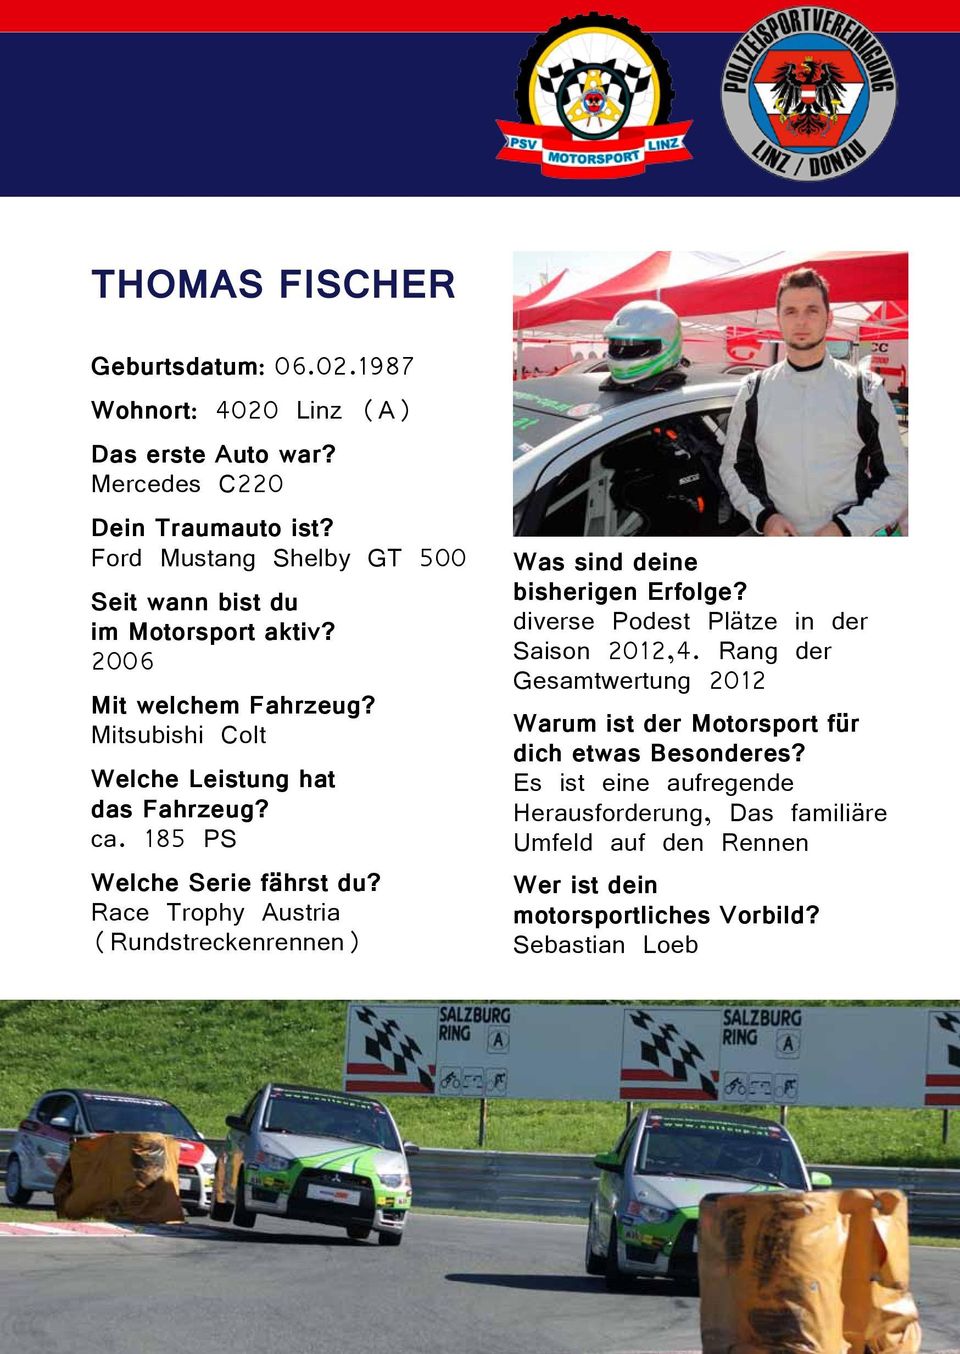 185 PS Welche Serie fährst du? Race Trophy Austria (Rundstreckenrennen) Was sind deine bisherigen Erfolge? diverse Podest Plätze in der Saison 2012,4.